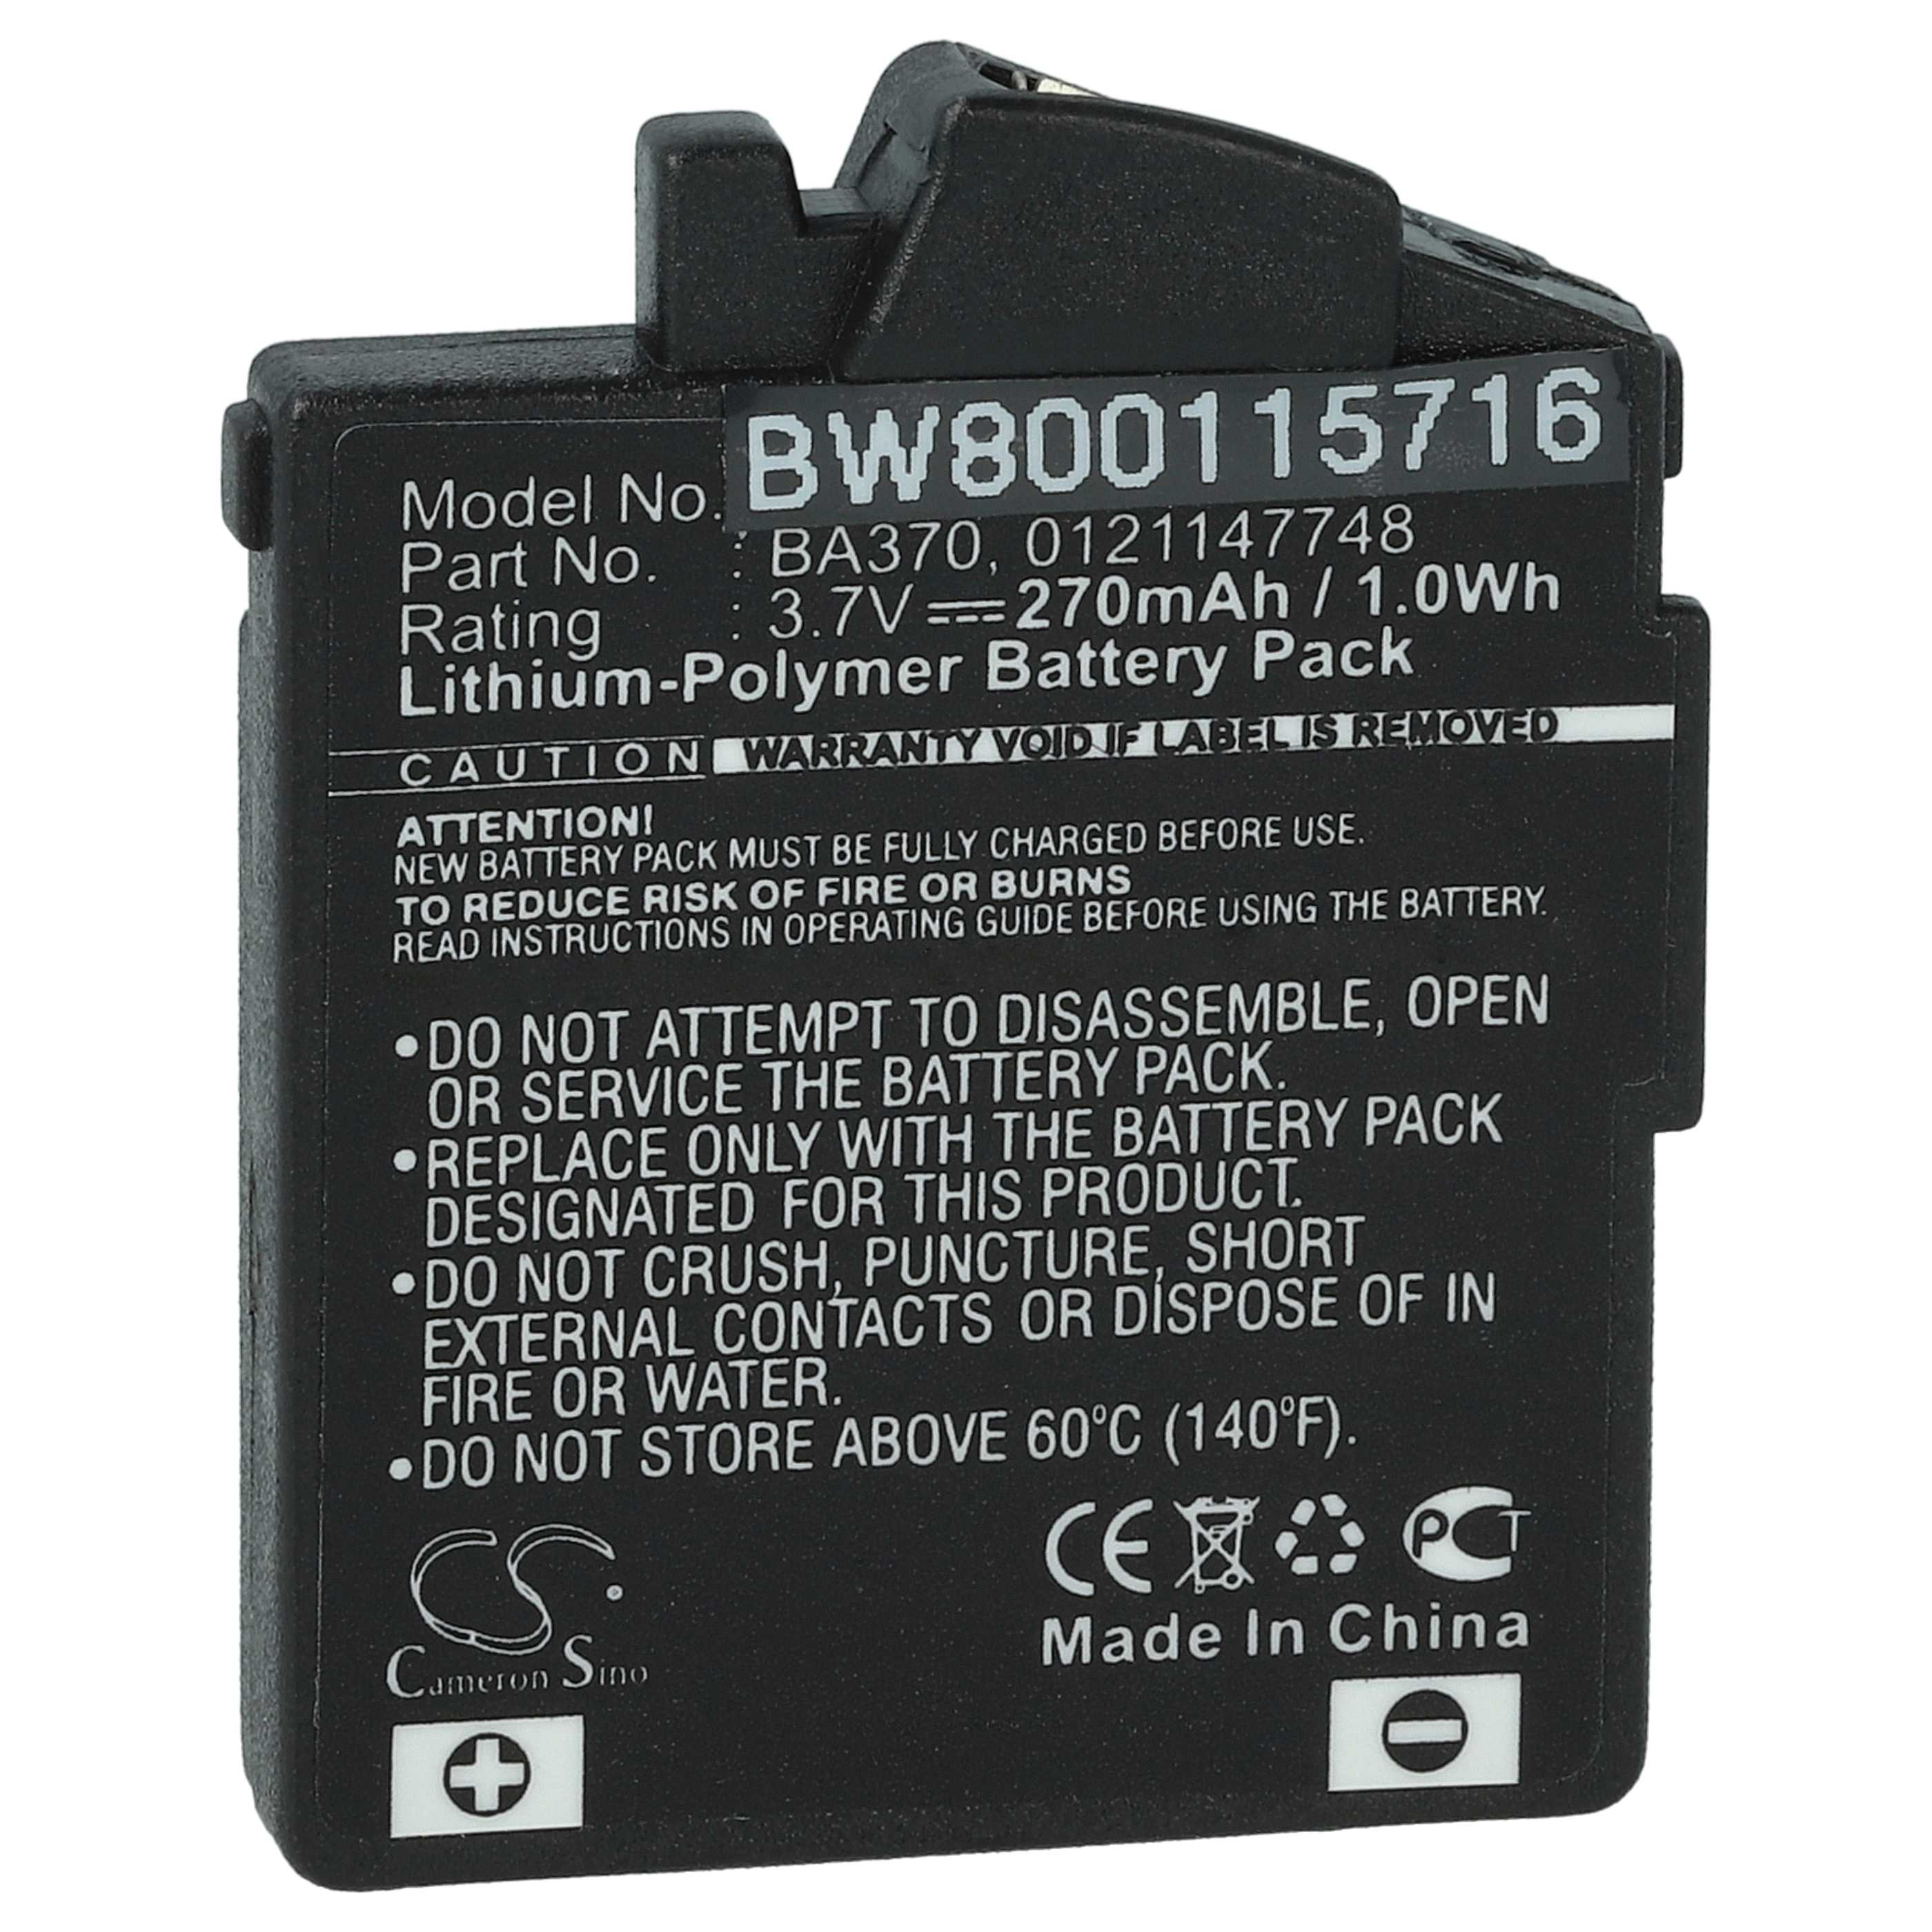 Batterie remplace Sennheiser 0121147748, BA370, BA 370 PX pour casque audio - 270mAh 3,7V Li-polymère